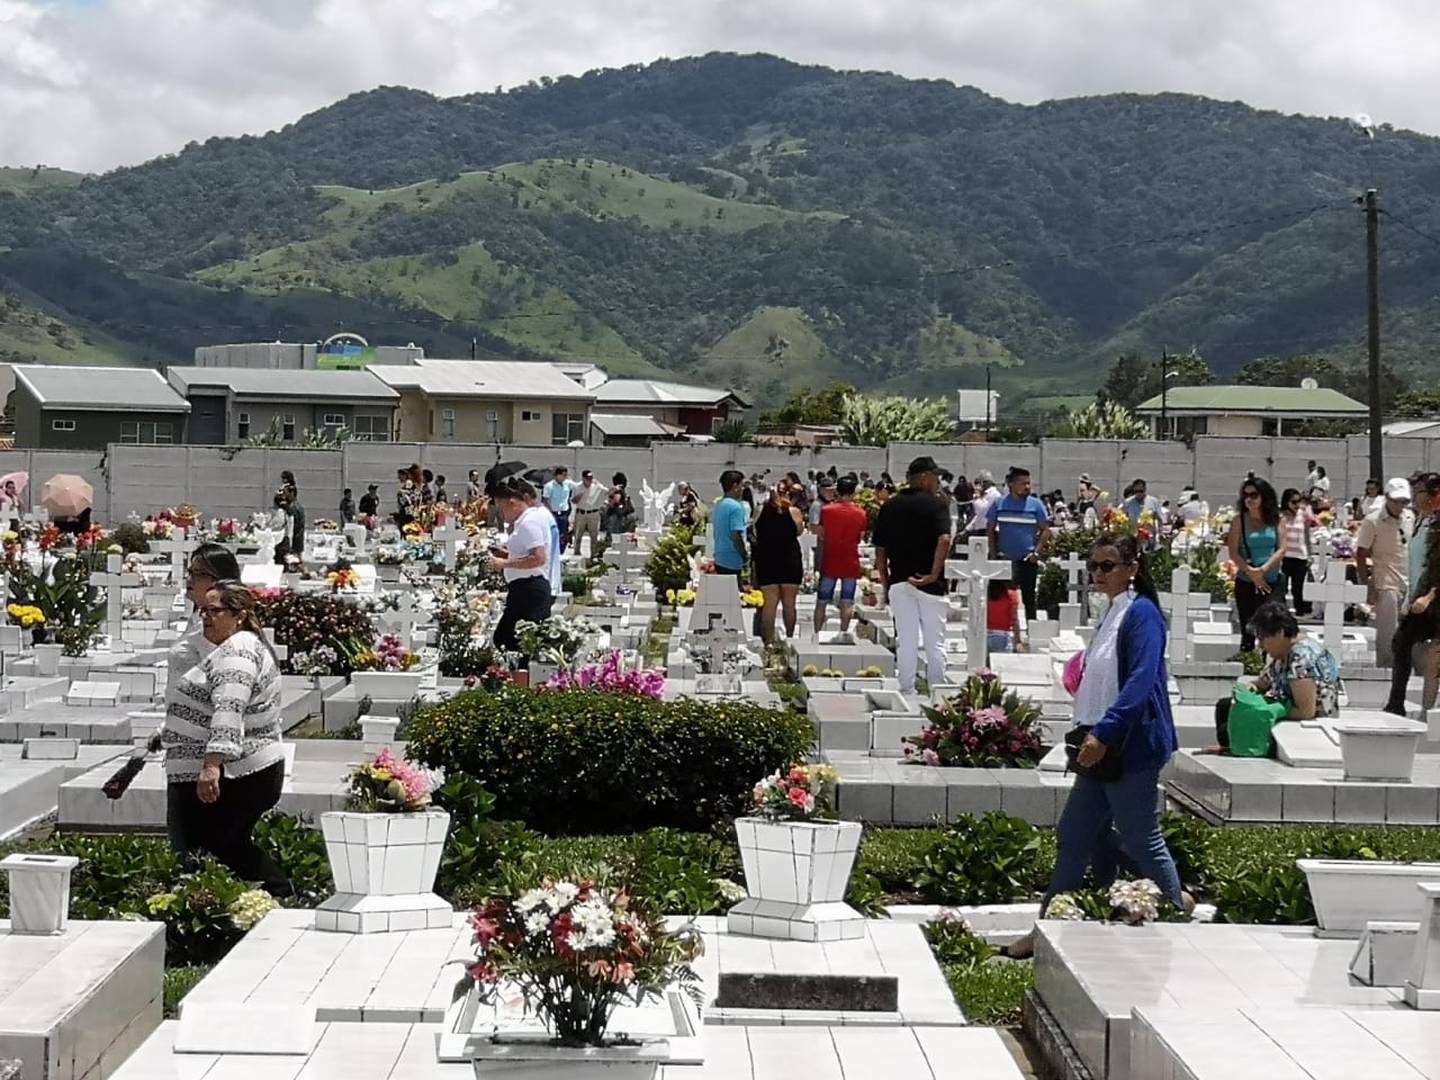 Cementerio central de Cartago lleno de gente por el Día de